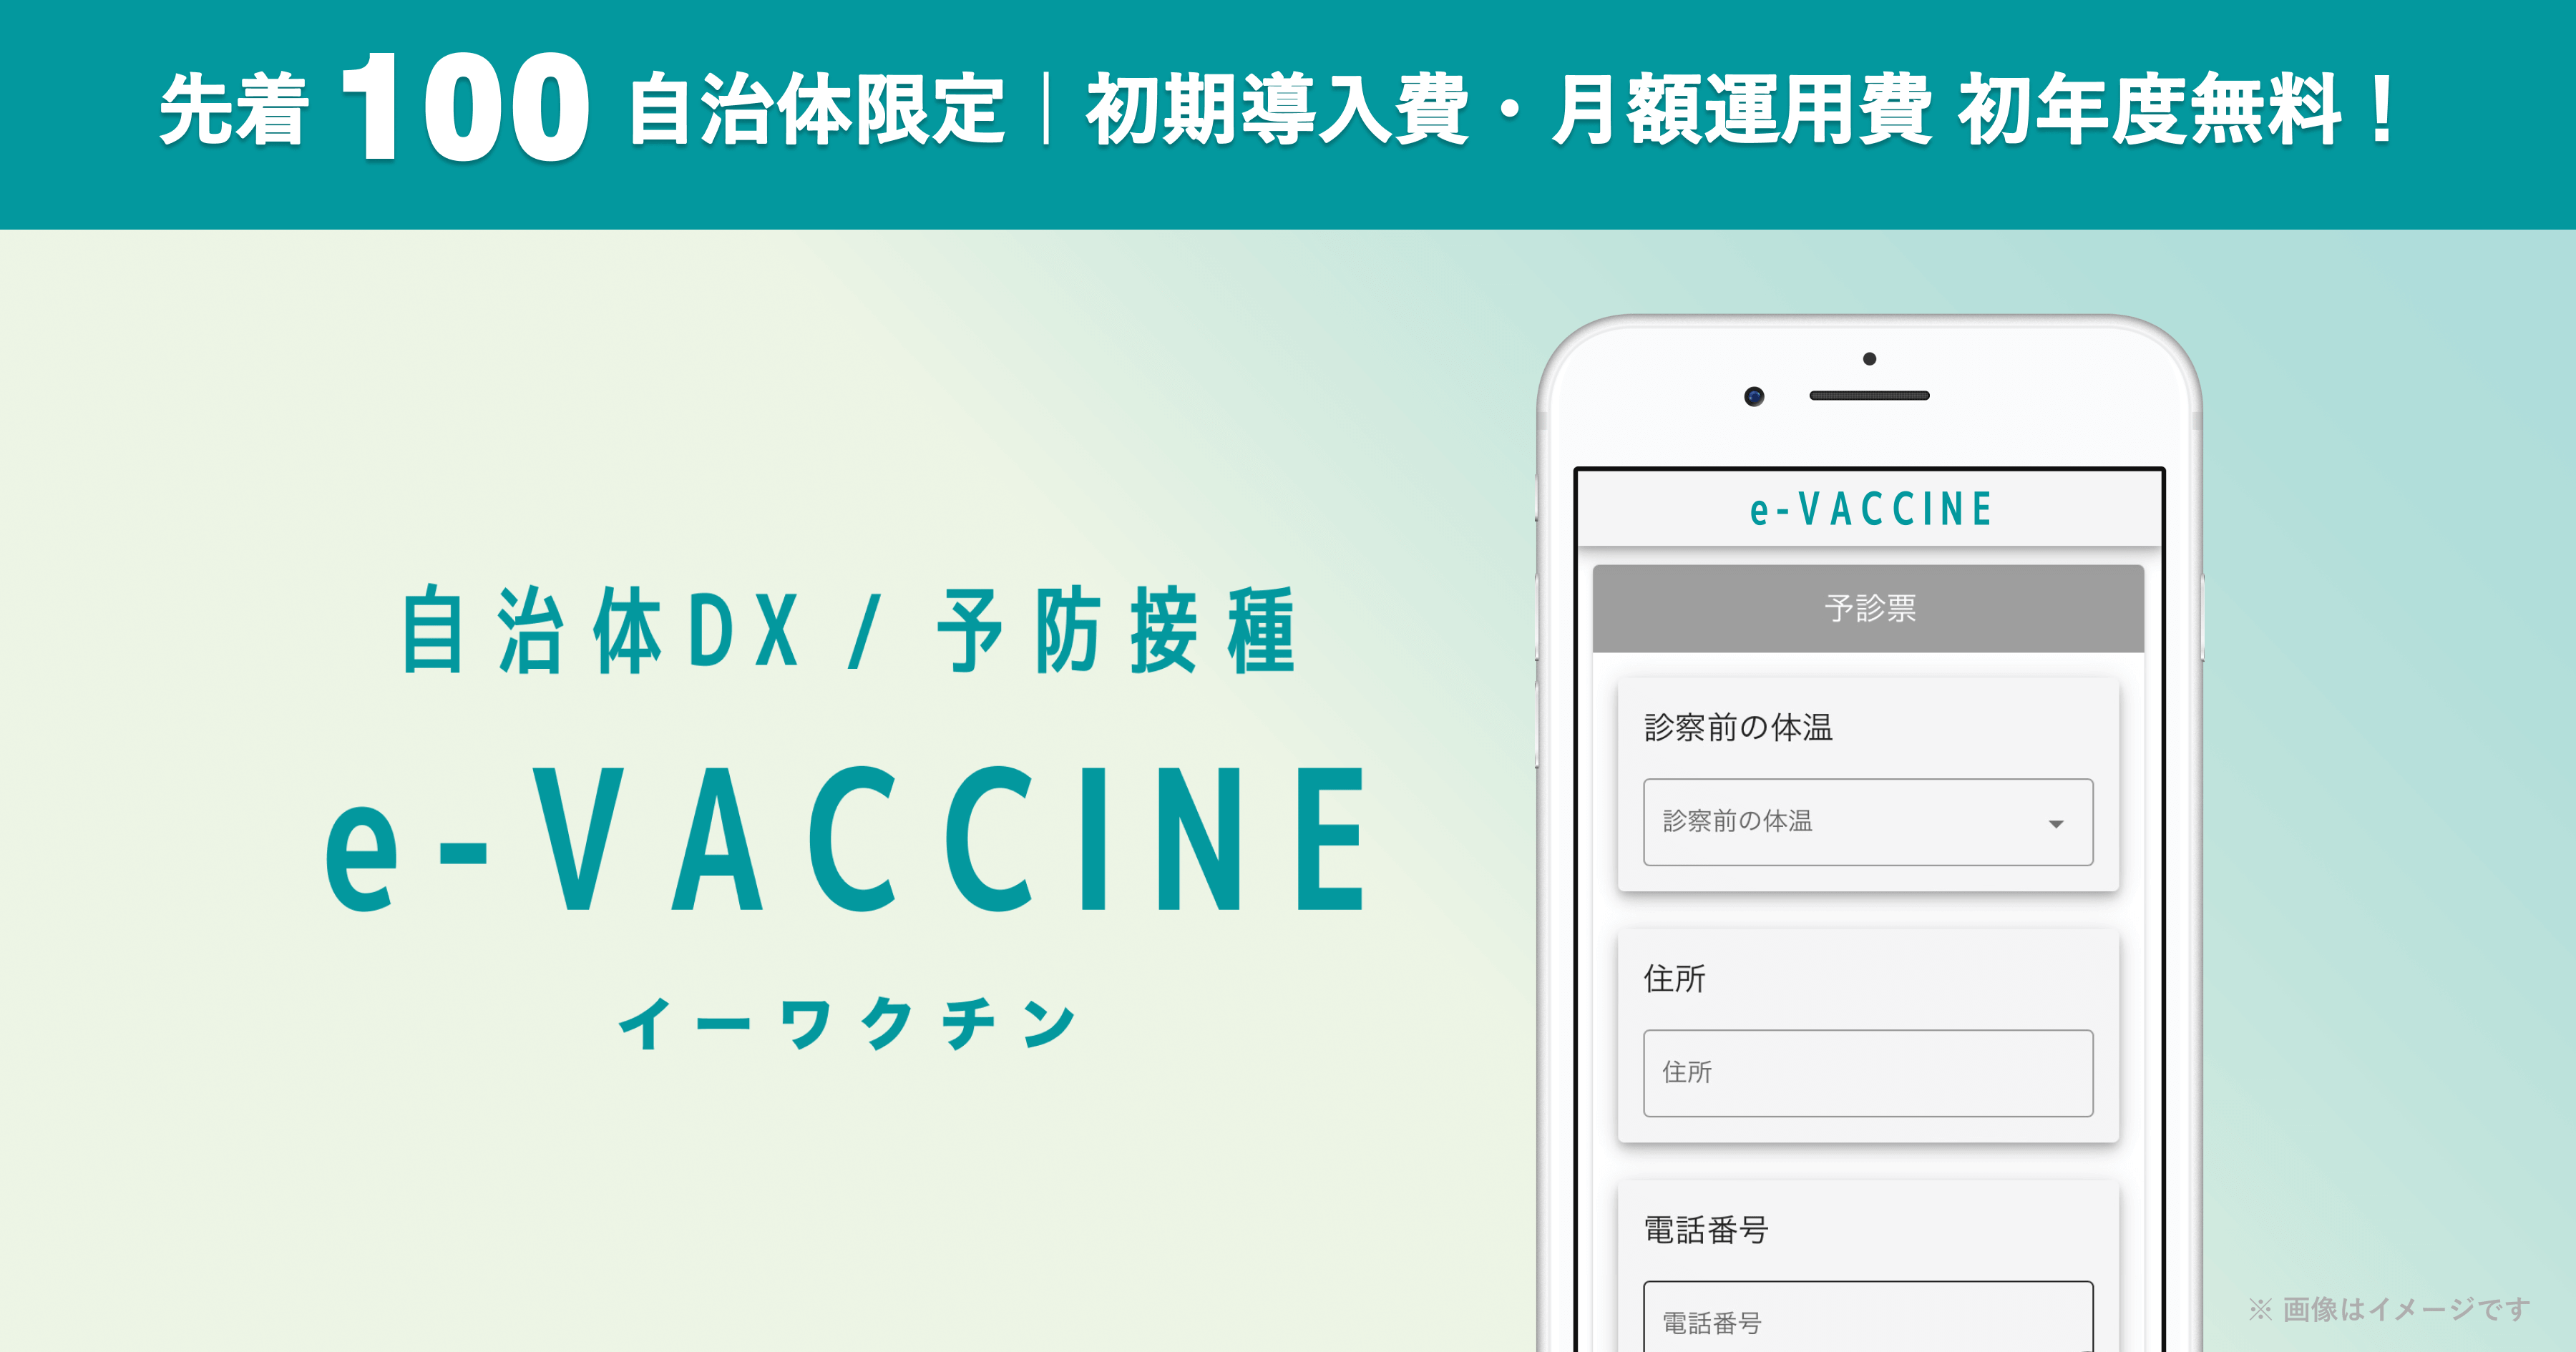 予防接種手続きデジタル化サービス「e-VACCINE」